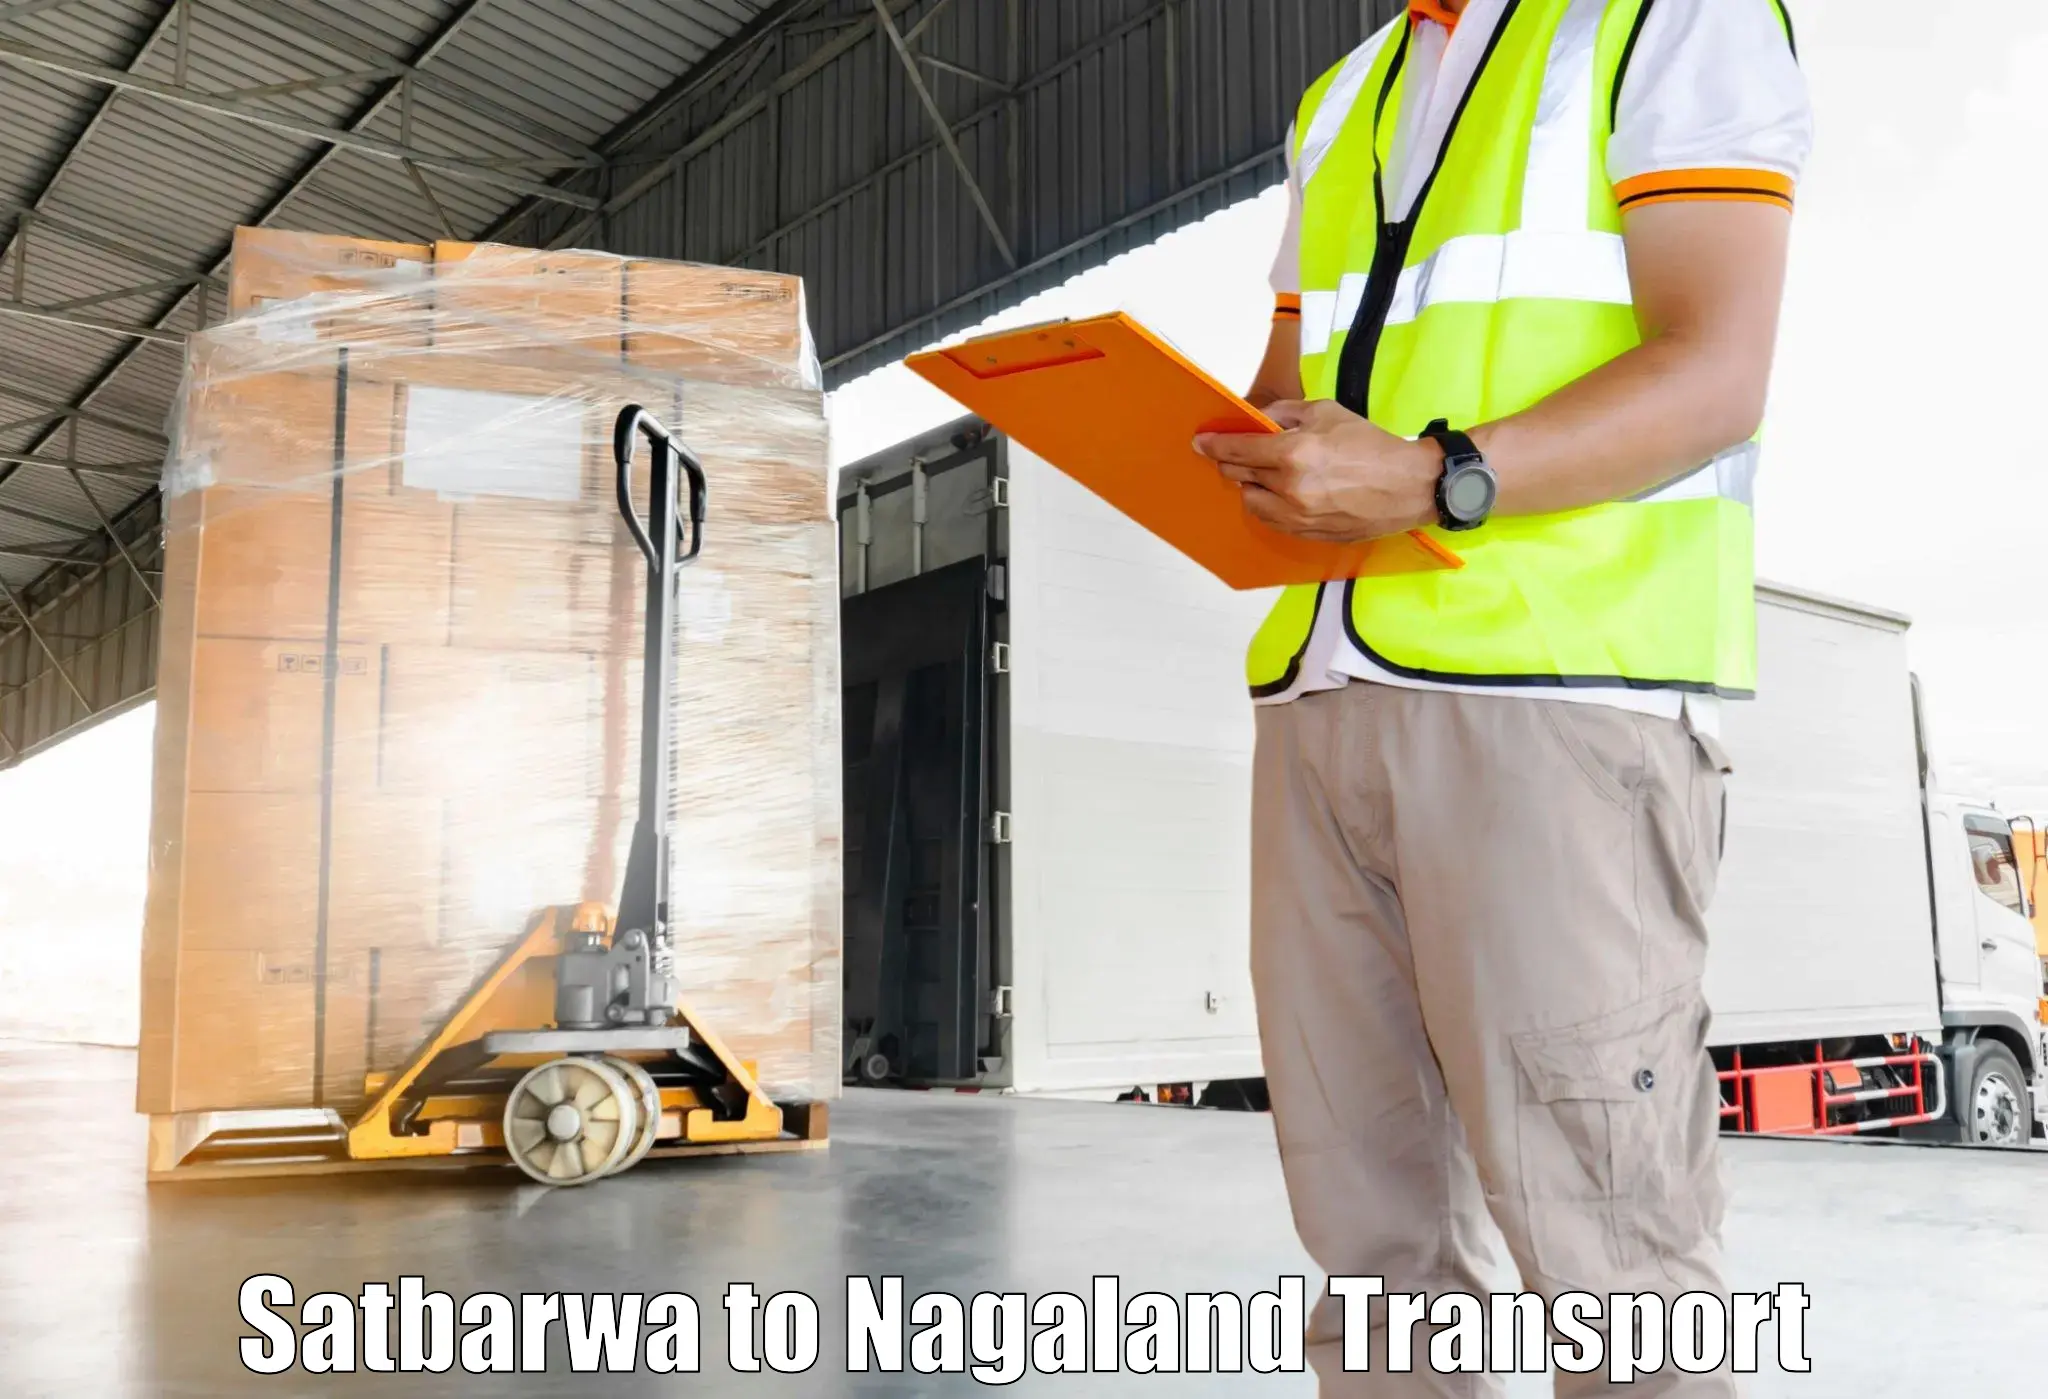 Online transport service Satbarwa to Longleng